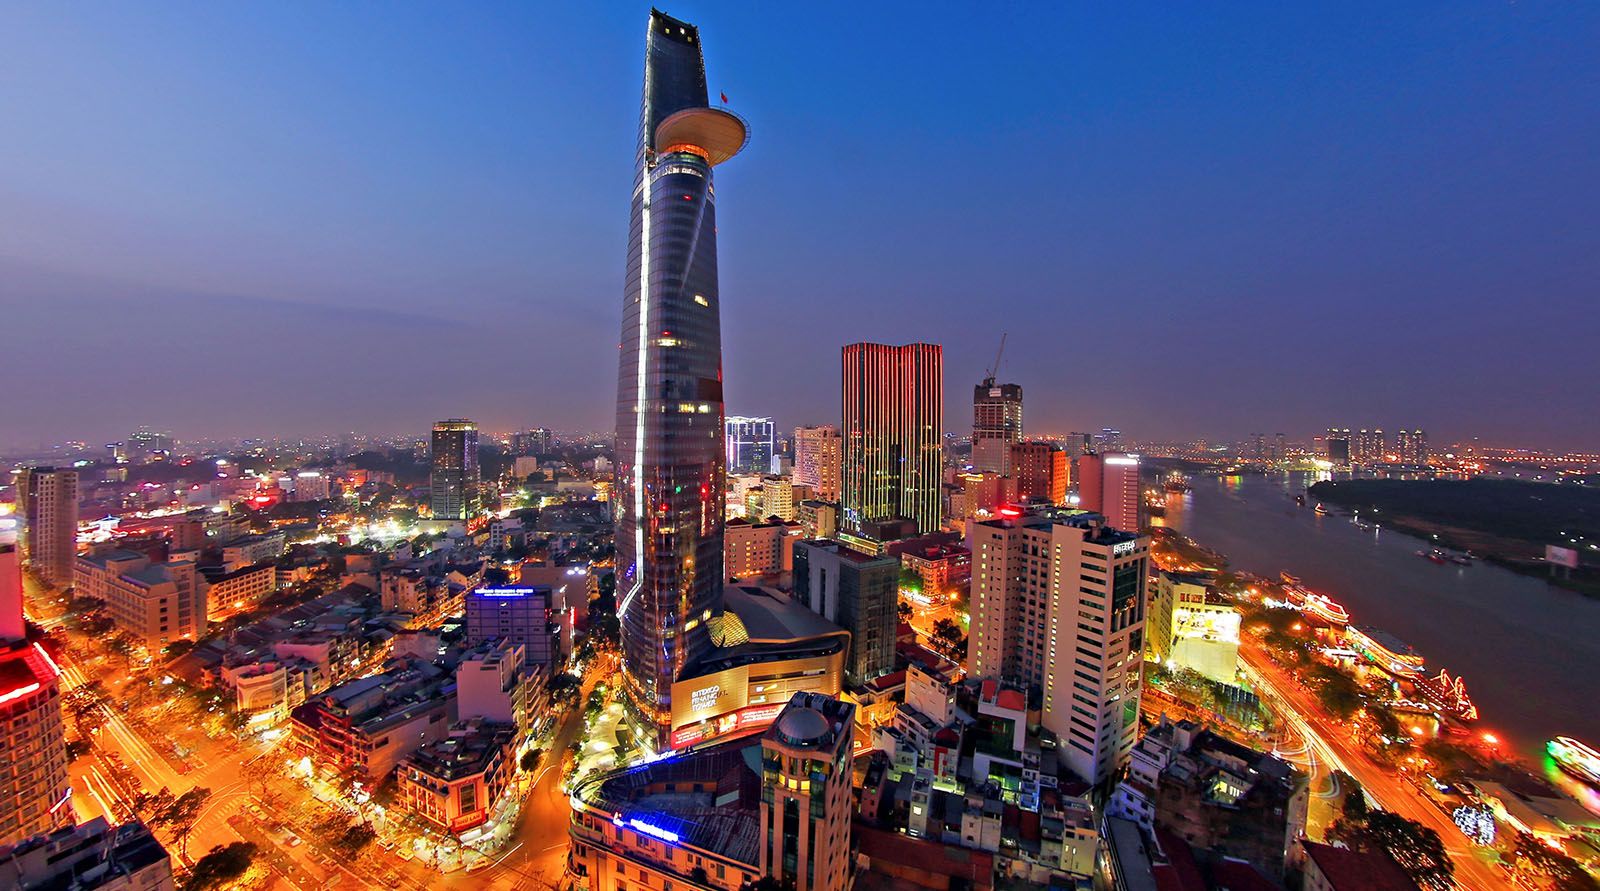 Ho Chi Minh city from a far